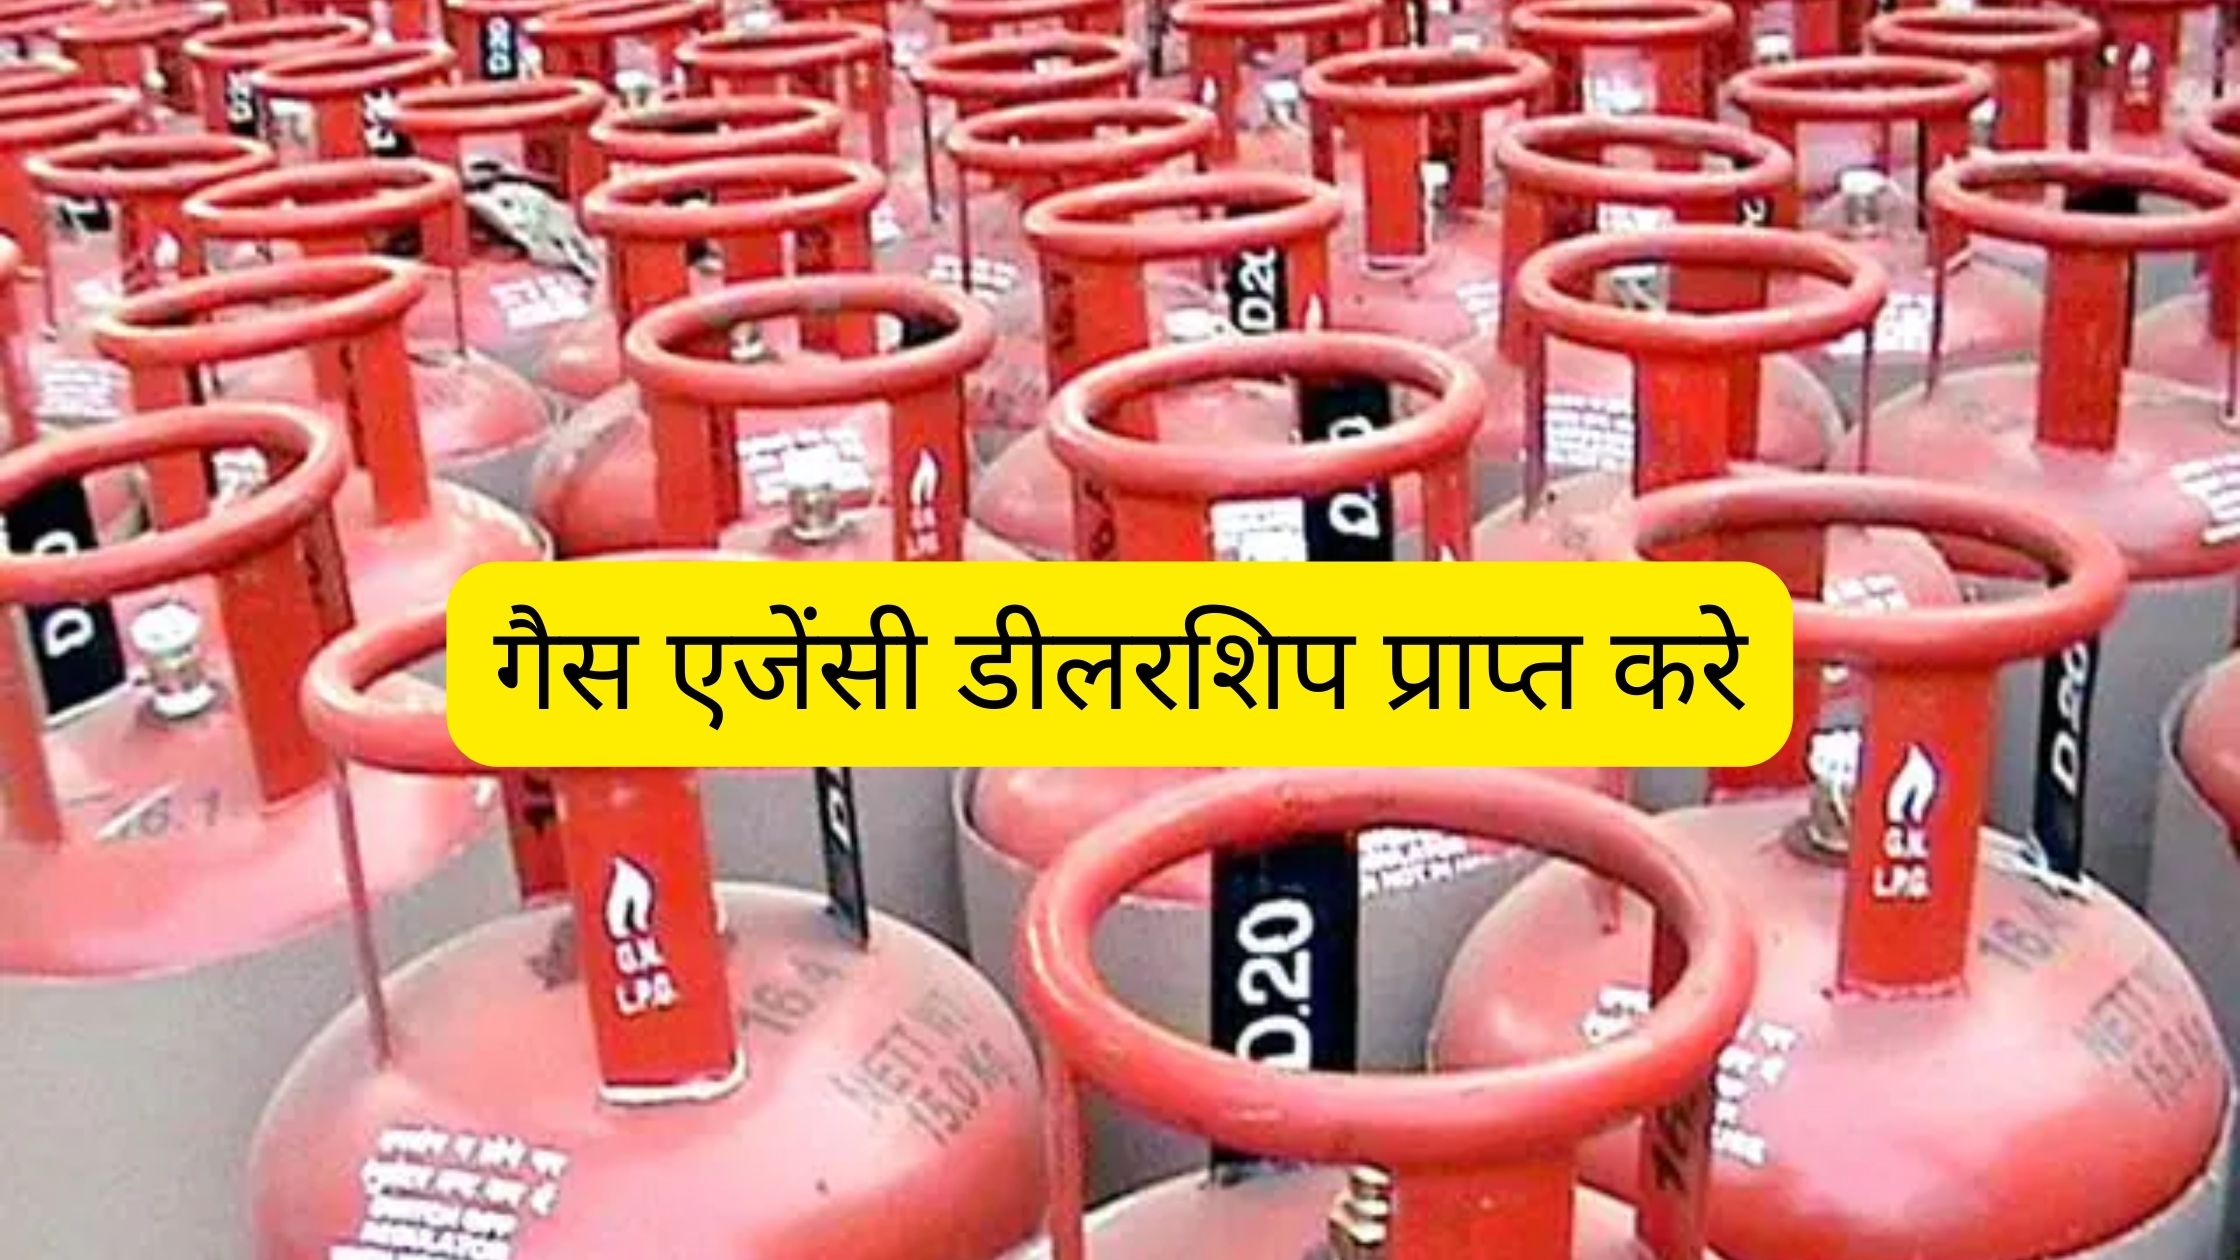 गैस एजेंसी डीलरशिप प्राप्त करे (Get Gas Agency Dealership in Hindi) 2023